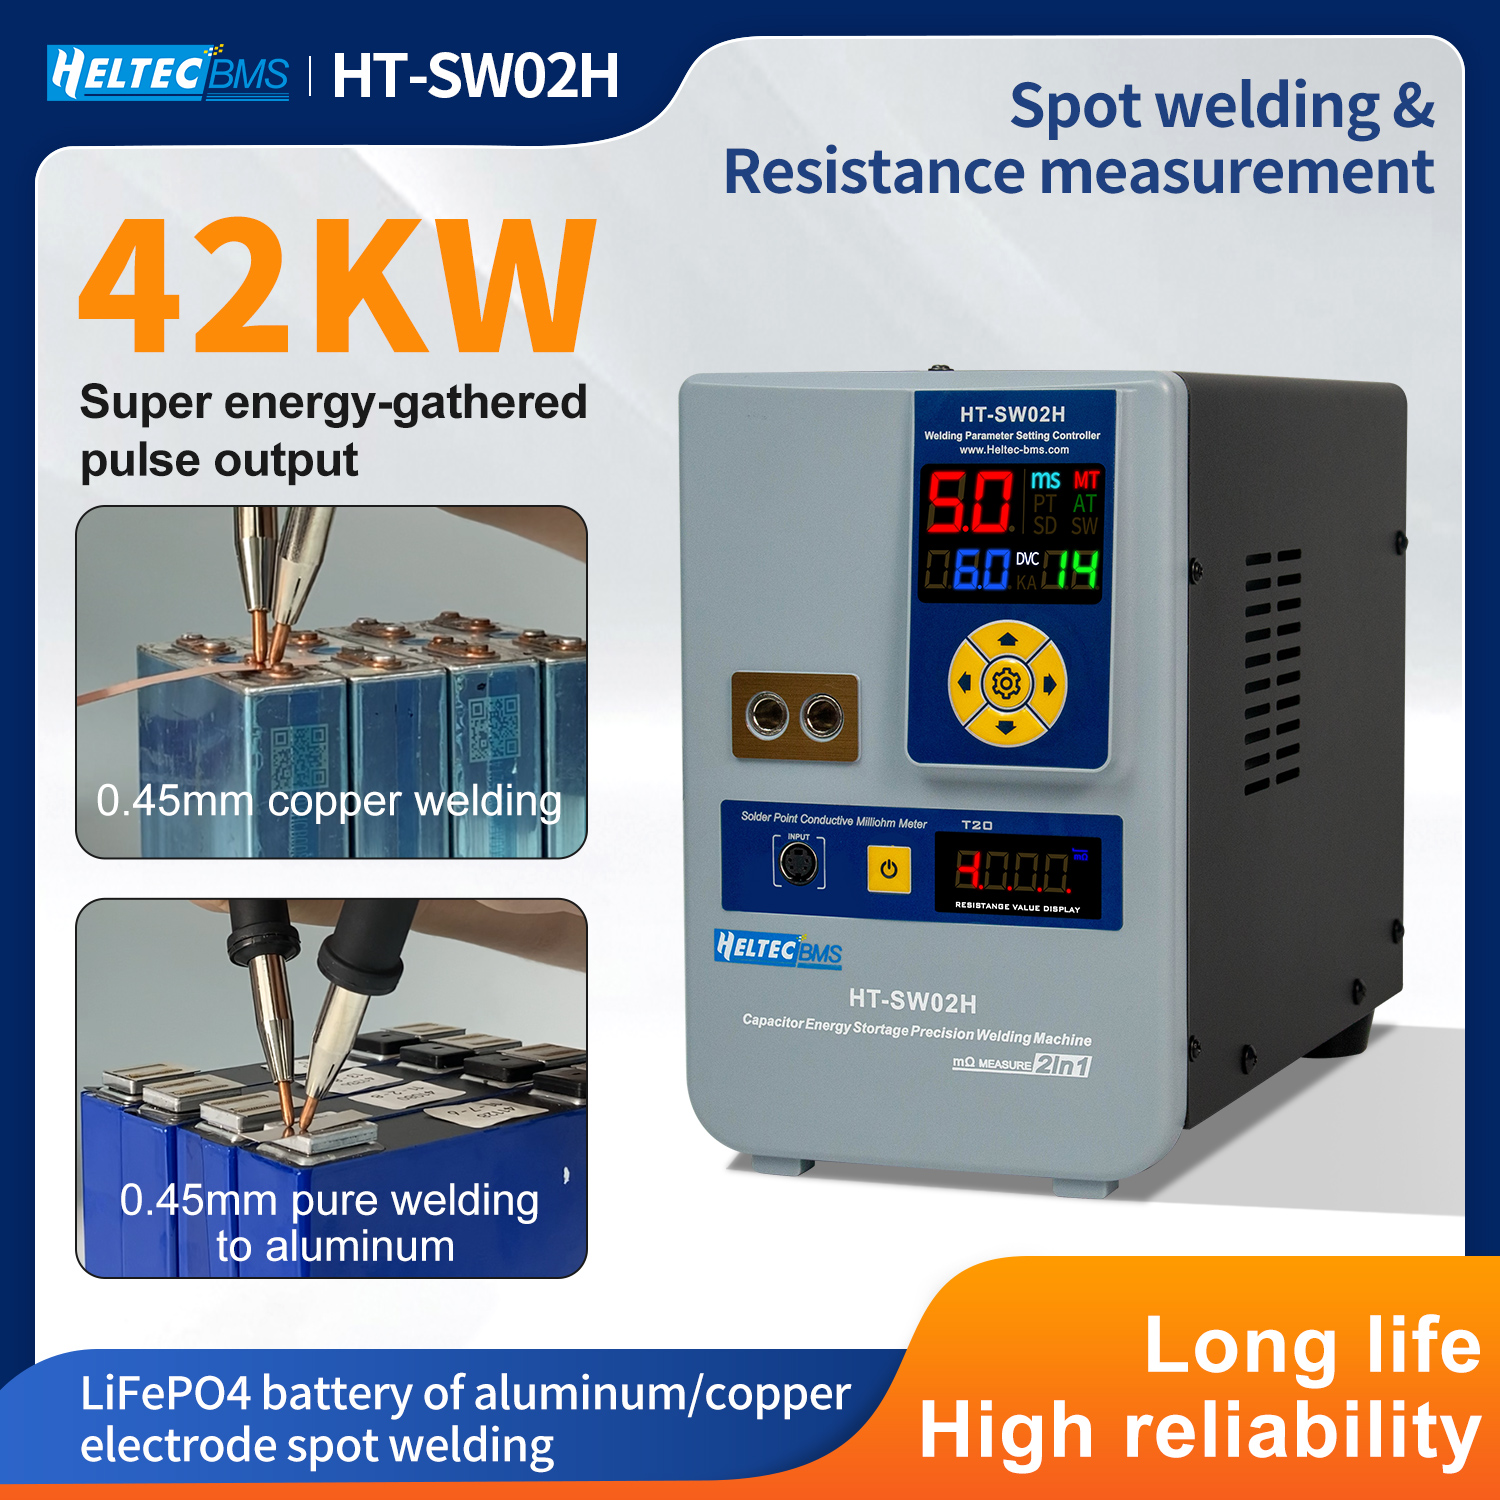 heltec-spot-welding-machine-02h-capacitor-energy-storage-welder-42KW.jpg